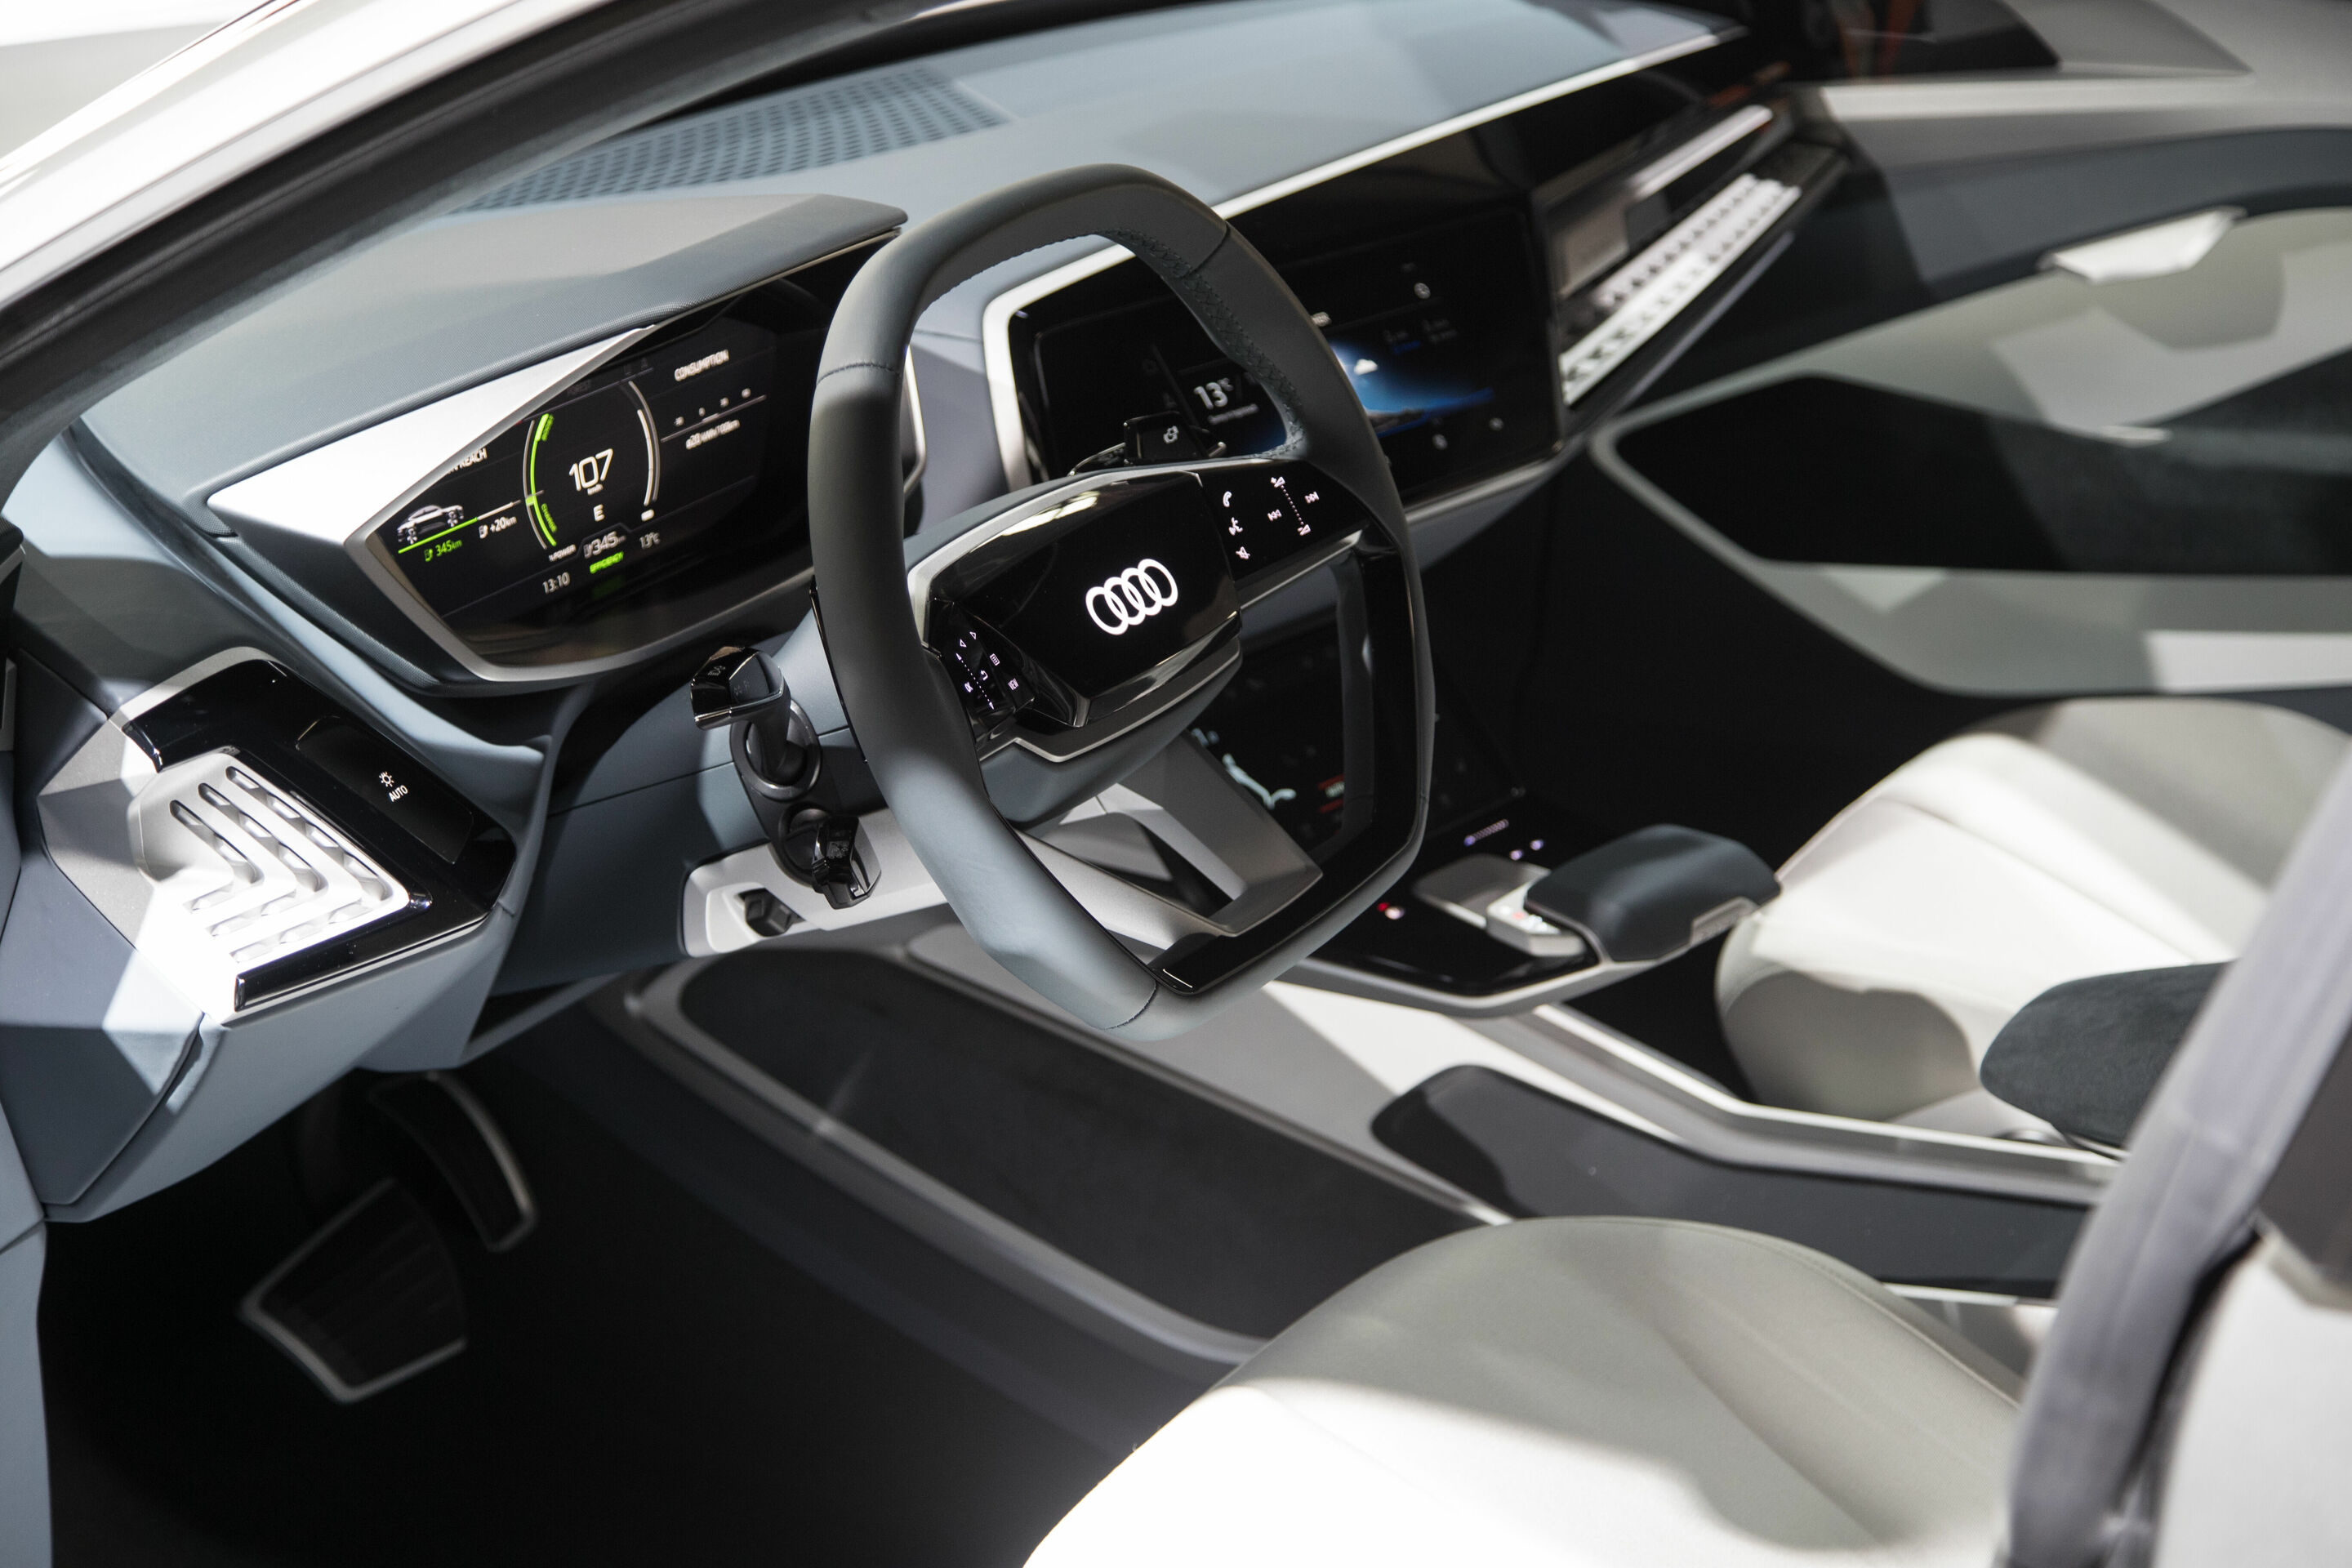 Audi e-tron Sportback concept Weltpremiere Auto Shanghai 2017